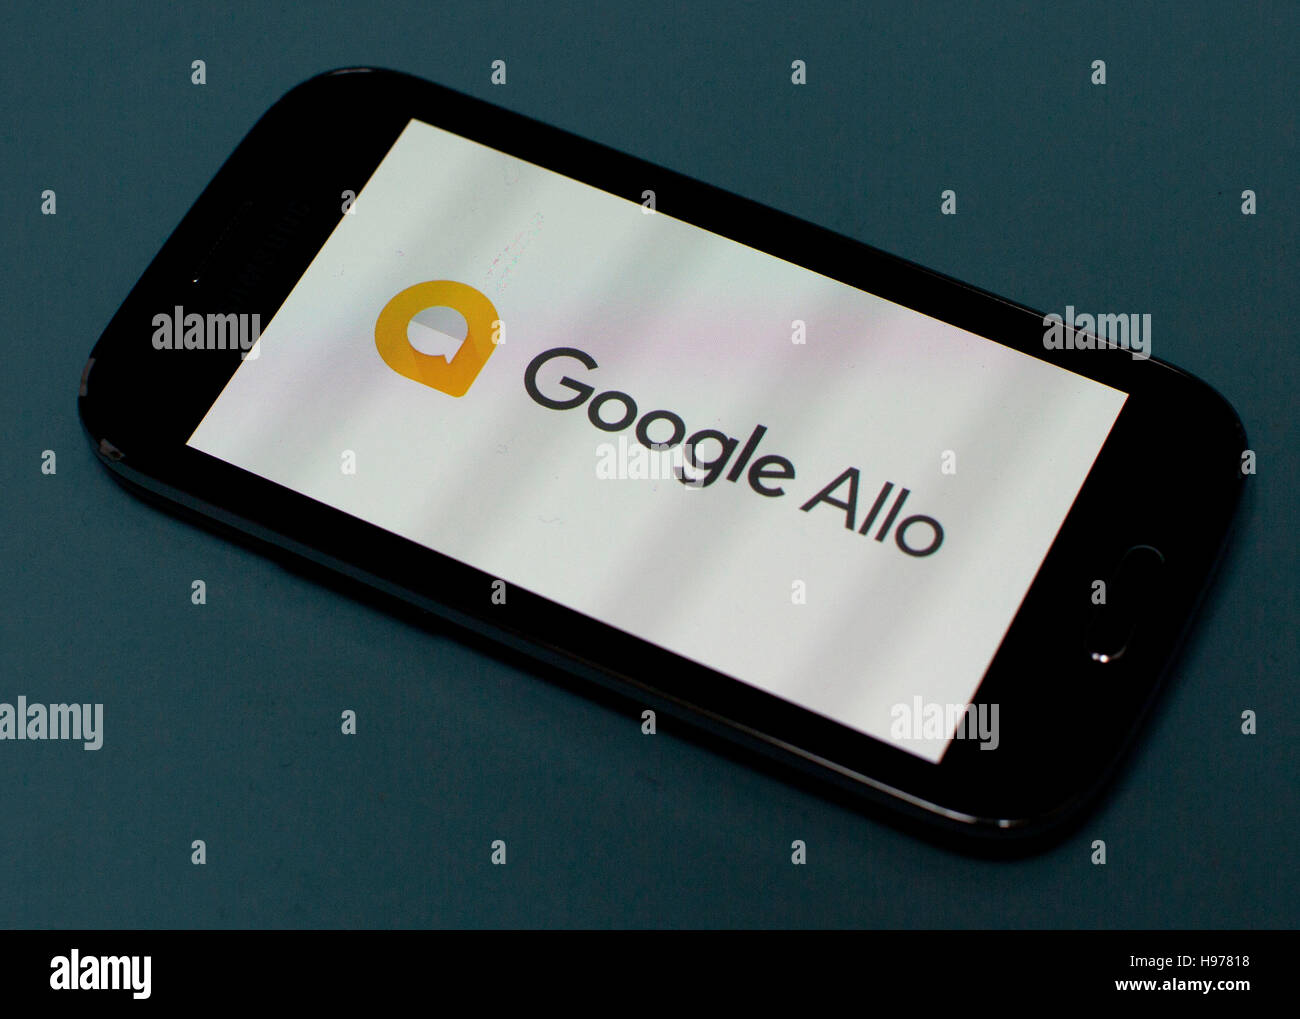 Allo Google logo sur l'écran du smartphone, Londres Banque D'Images